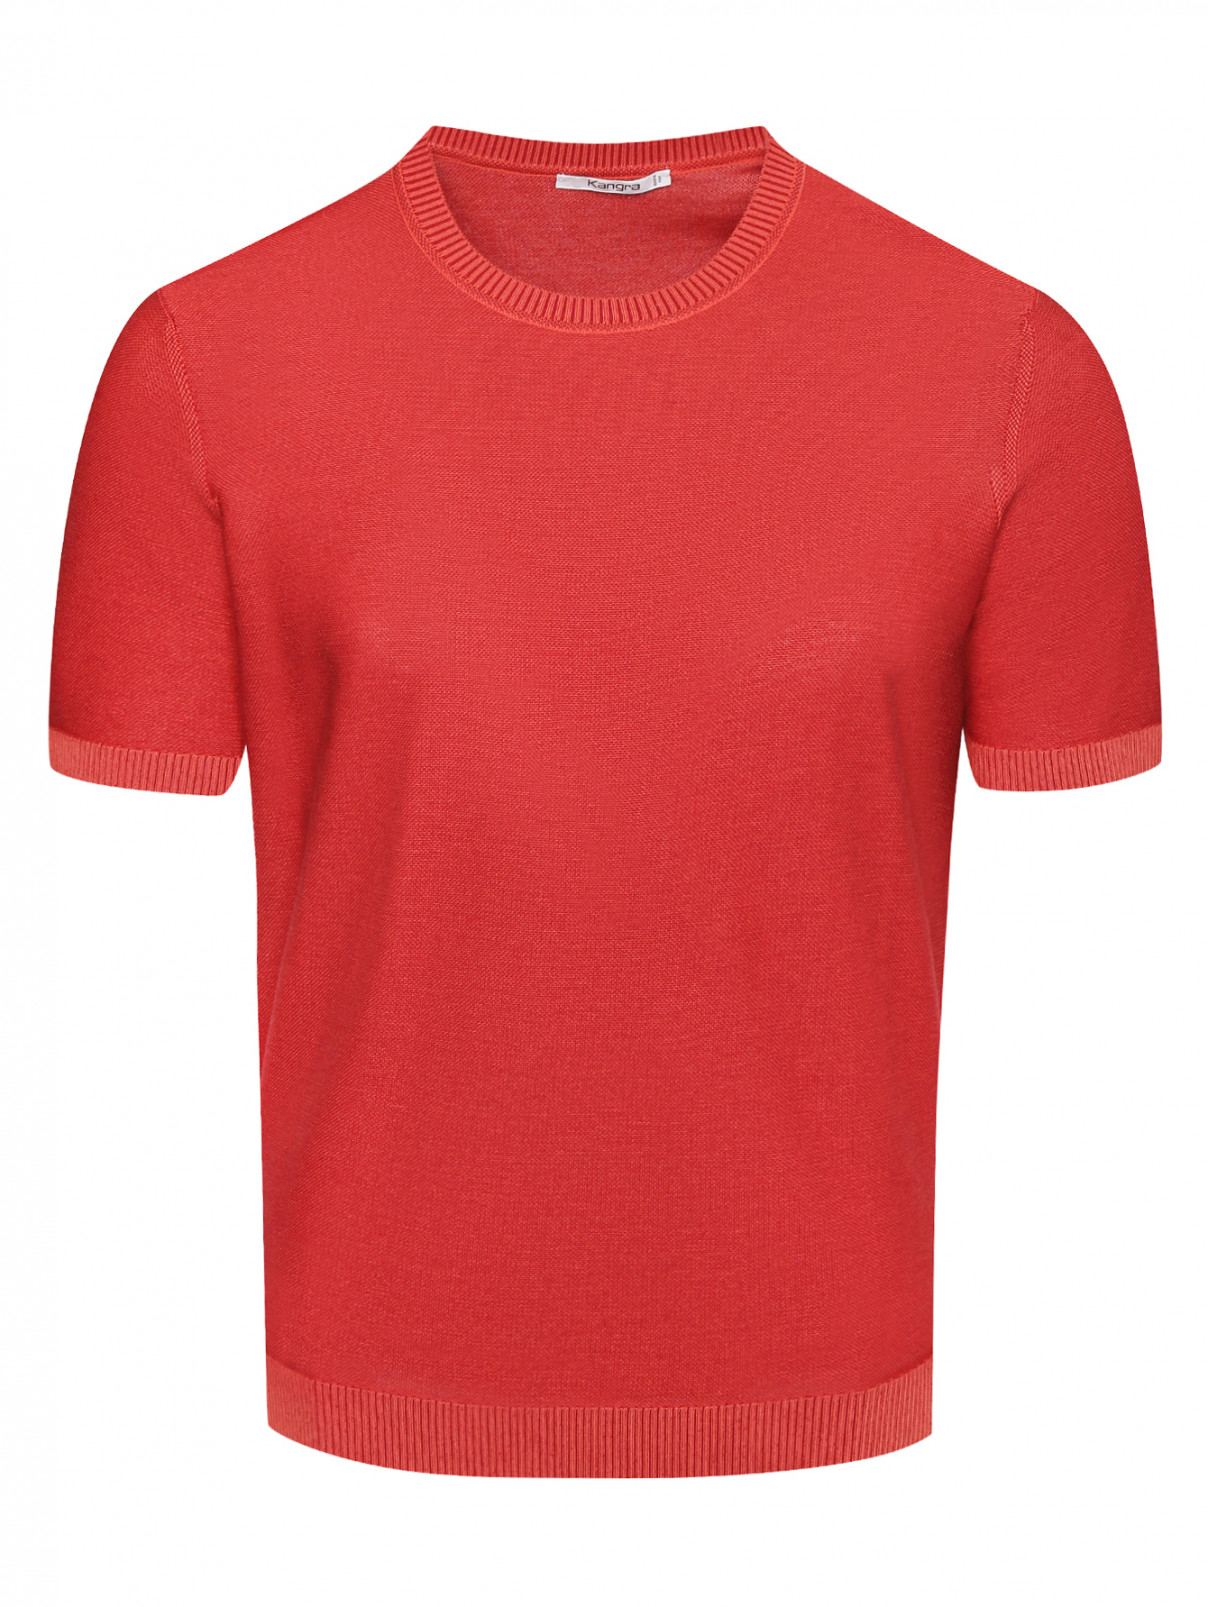 Трикотажная футболка из хлопка Kangra Cashmere  –  Общий вид  – Цвет:  Красный